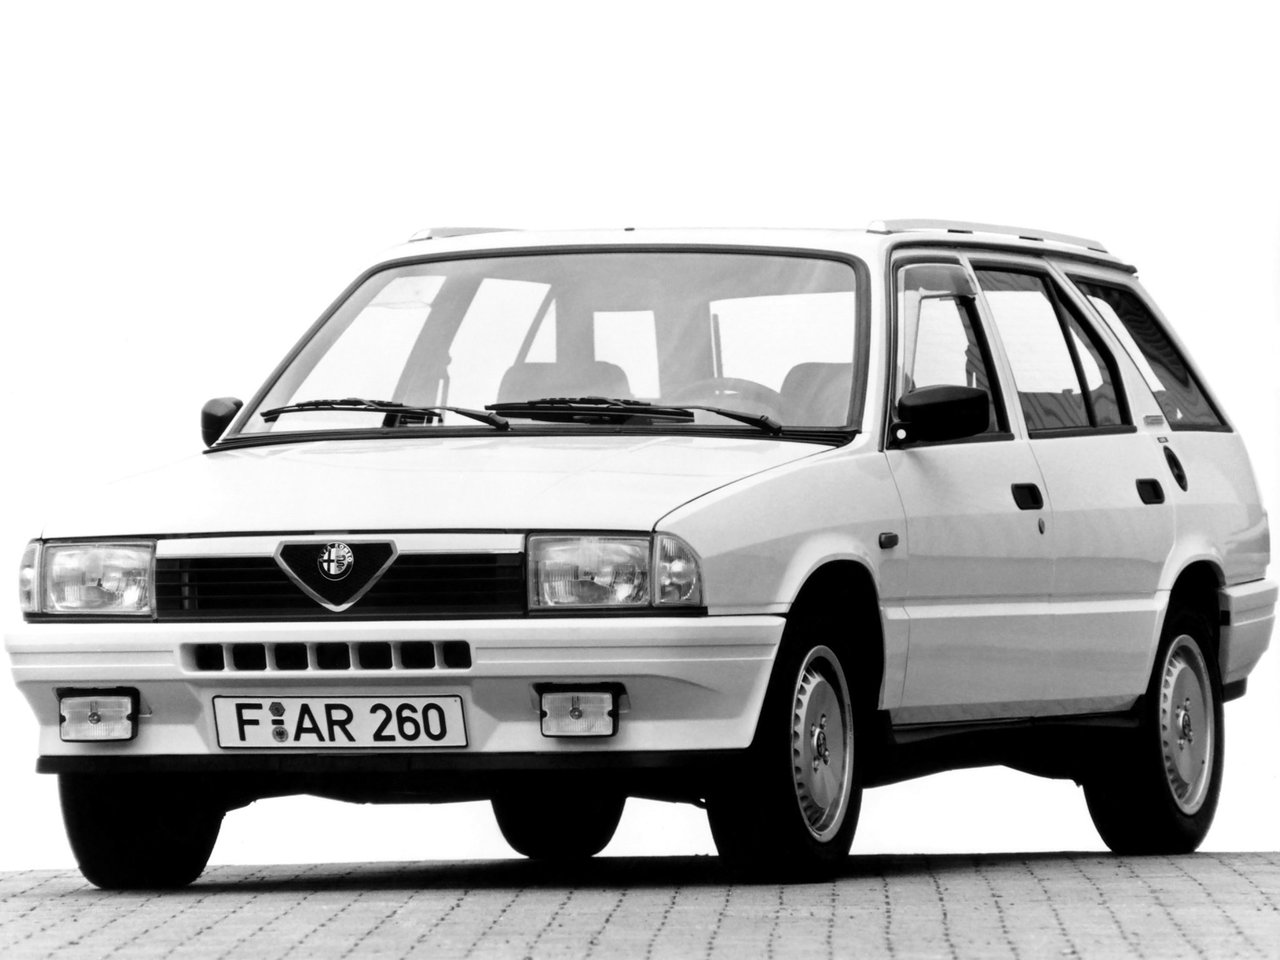 Расход газа одной комплектации универсала пять дверей Alfa Romeo 33. Разница стоимости заправки газом и бензином. Автономный пробег до и после установки ГБО.